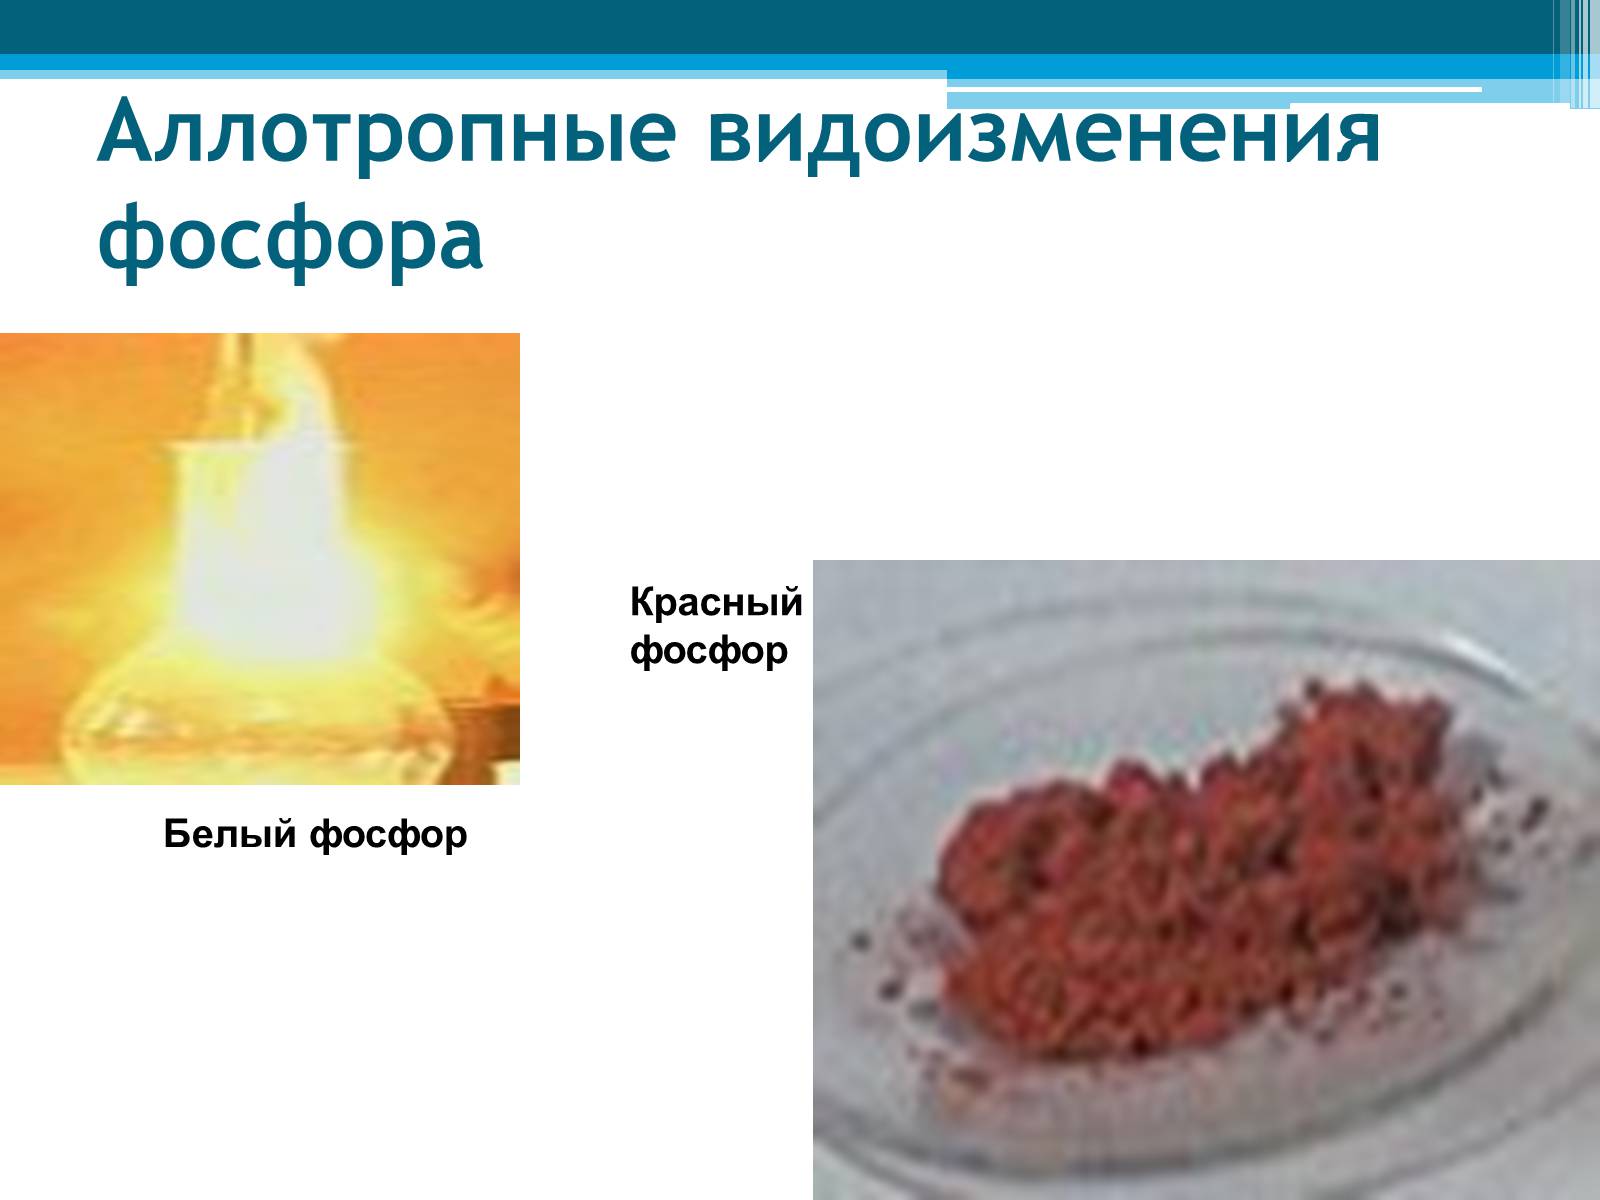 Реакция фосфора с бромом. Аллотропные модификации фосфора. Аллотропные видоизменения фосфора. Красный фосфор. Белый фосфор и красный фосфор.